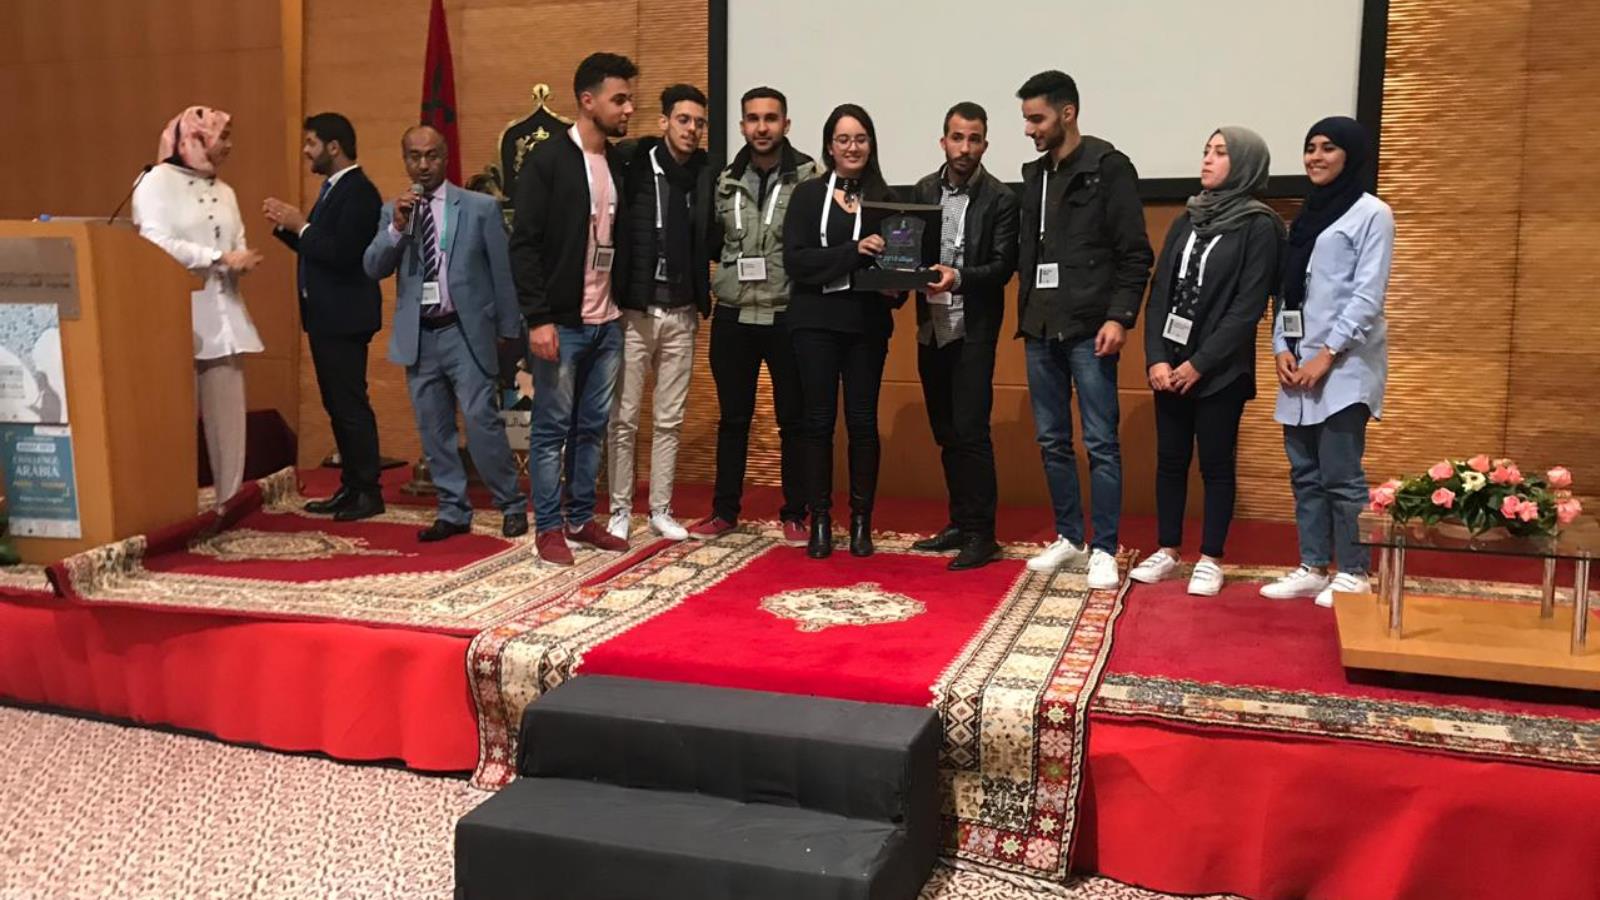 المؤتمر العربي السابع للابتكار شهد مشاركة أكثر من 300 شاب وشابة ينتمون إلى جامعات أكثر من 20 دولة عربية (الجزيرة)